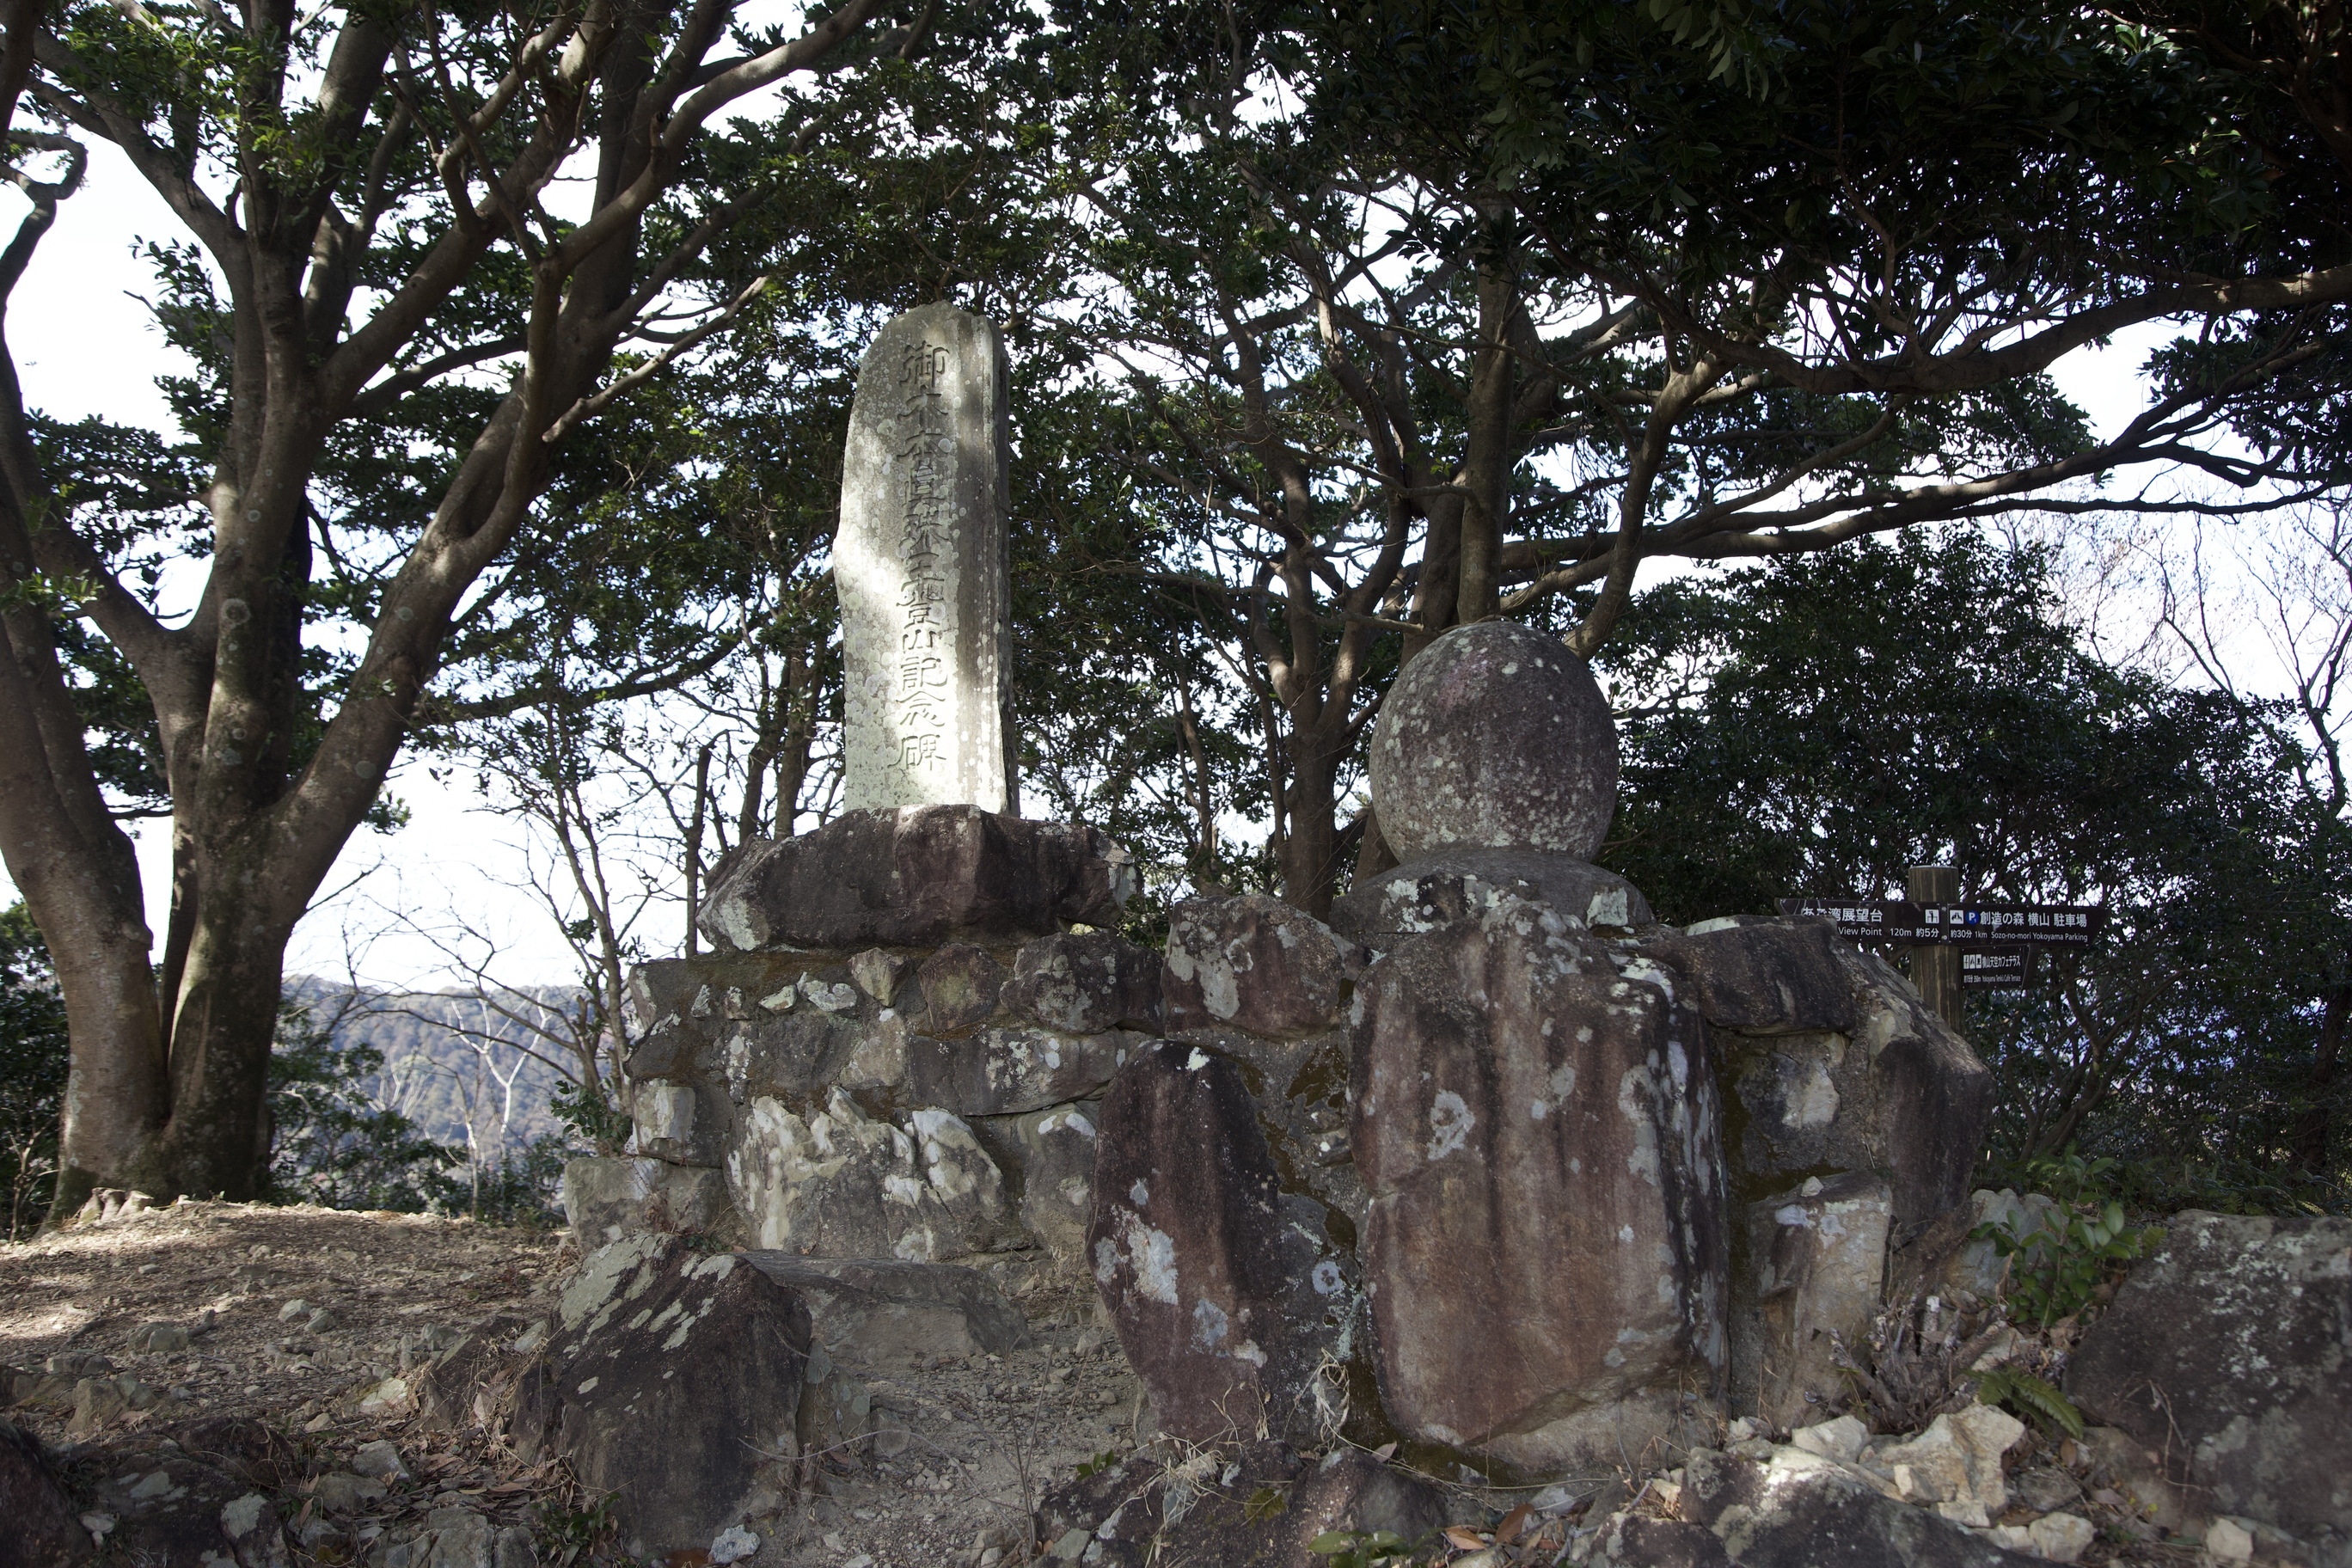 ミキモト真珠の記念碑の写真です。真珠のように丸い石の乗った記念碑の左に、御木本氏の登頂の記念碑が残っています。